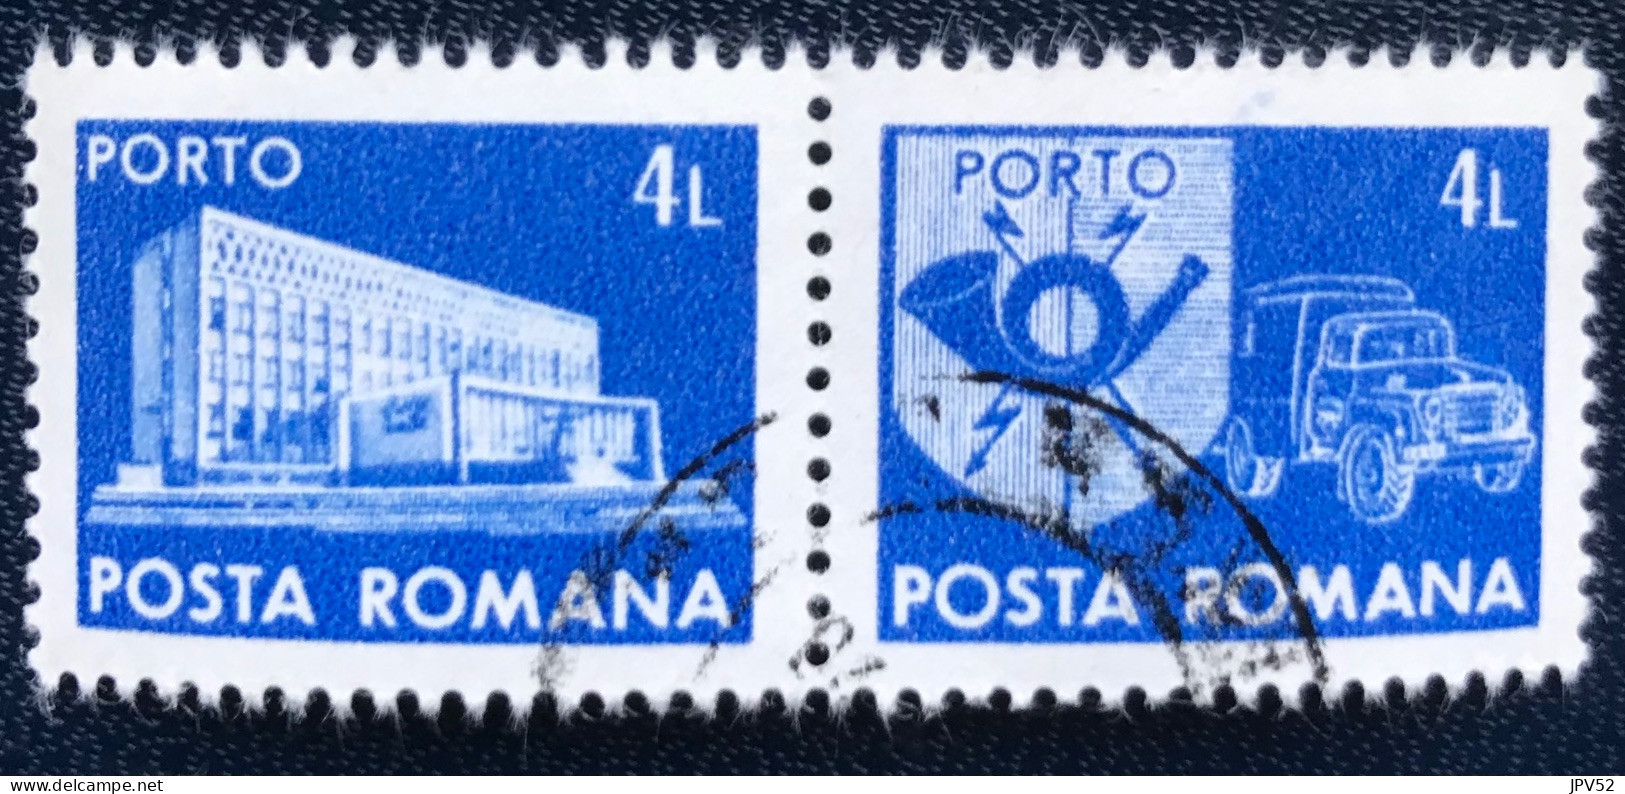 Romana - Roemenië - C14/55 - 1982 - (°)used - Michel 130 - Postkantoor & Postembleem & Postvoertuig - Strafport